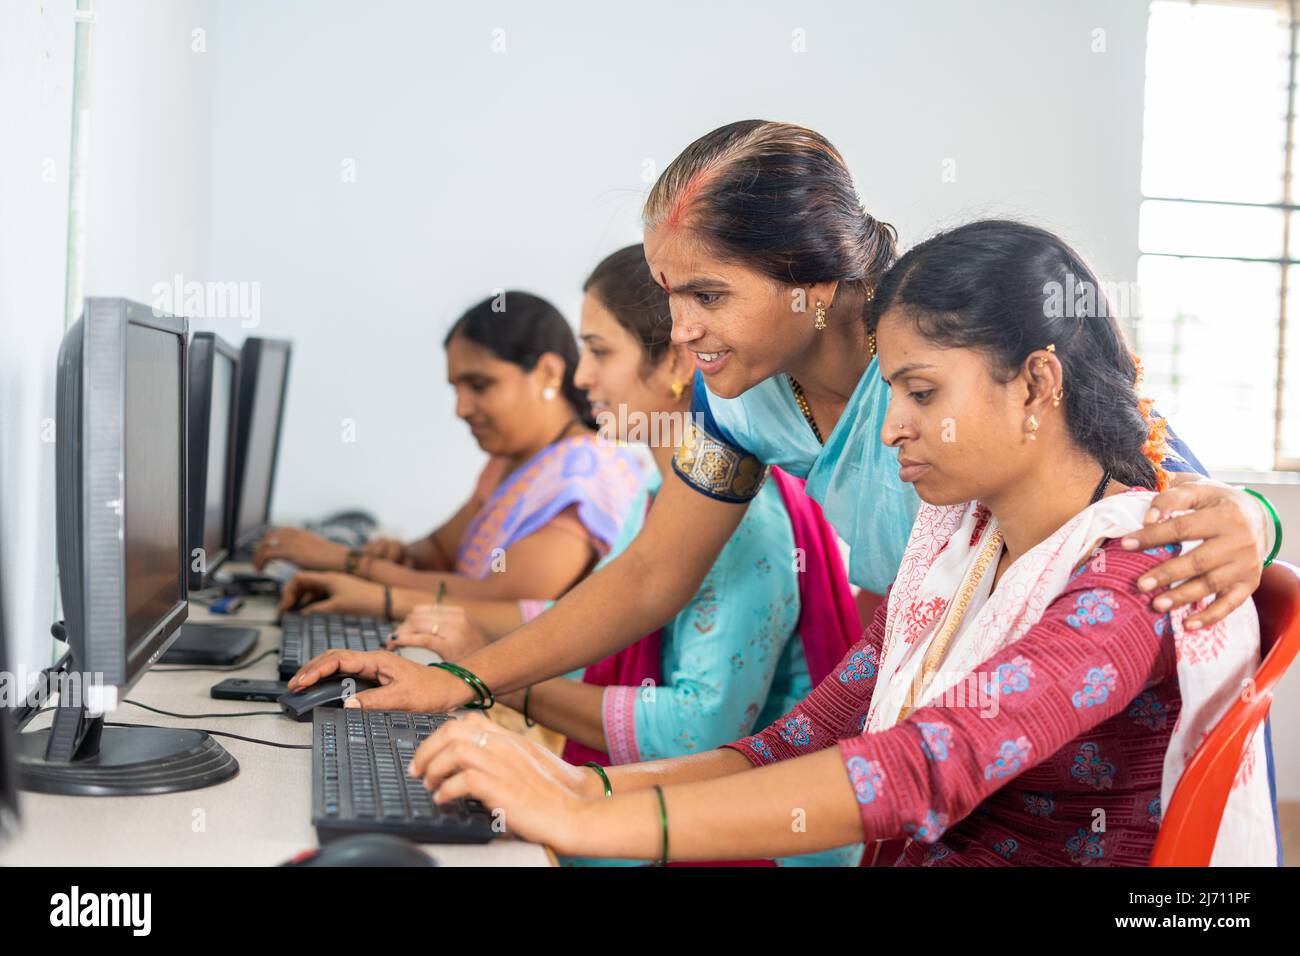 Lehrer hilft oder unterrichtet Studenten während der Computer-Klasse Ausbildung - Konzept des Lernens, persönliche Unterstützung und Technologie. Stockfoto